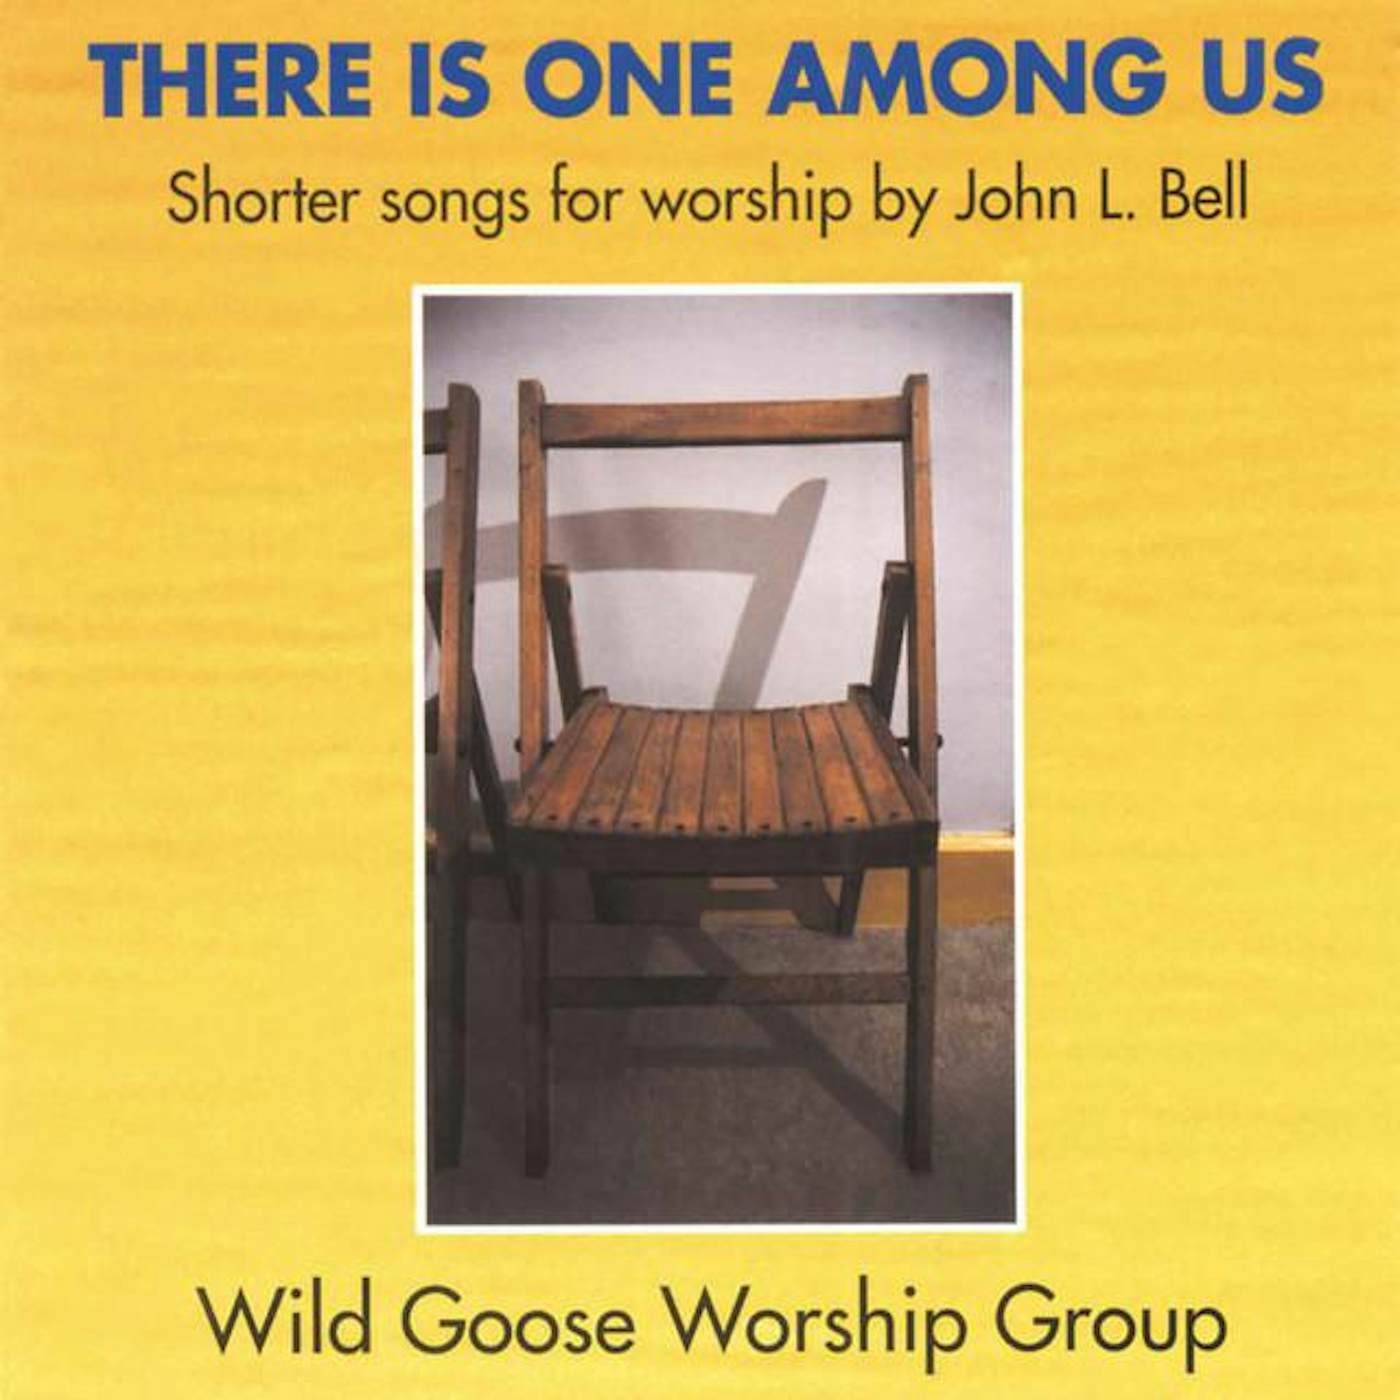 Wild Goose Worship Group